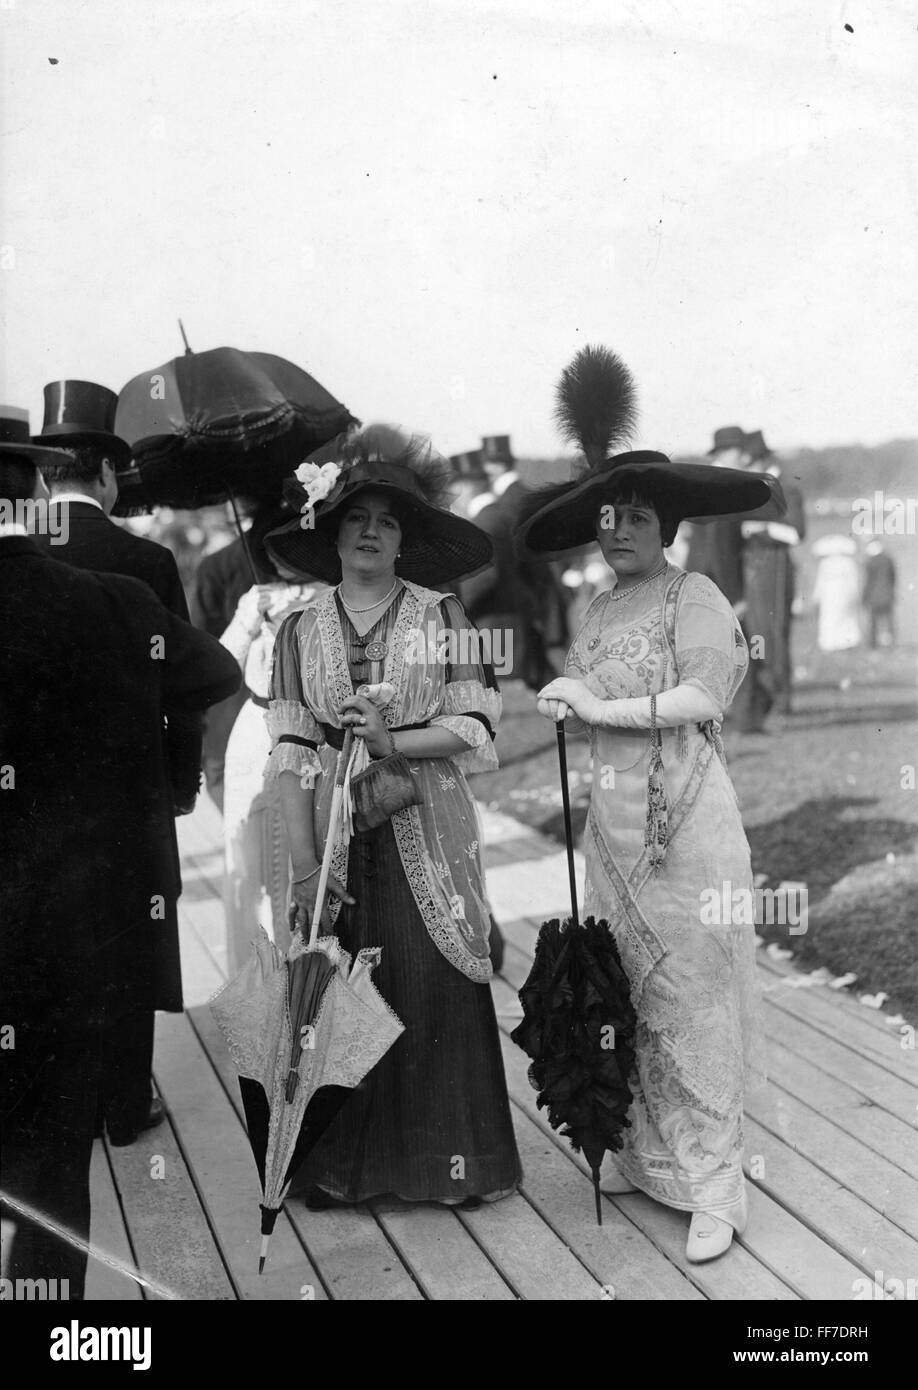 Mode, début du XXe siècle / début du XXe siècle, deux dames, vers 1900, droits additionnels-Clearences-non disponible Banque D'Images